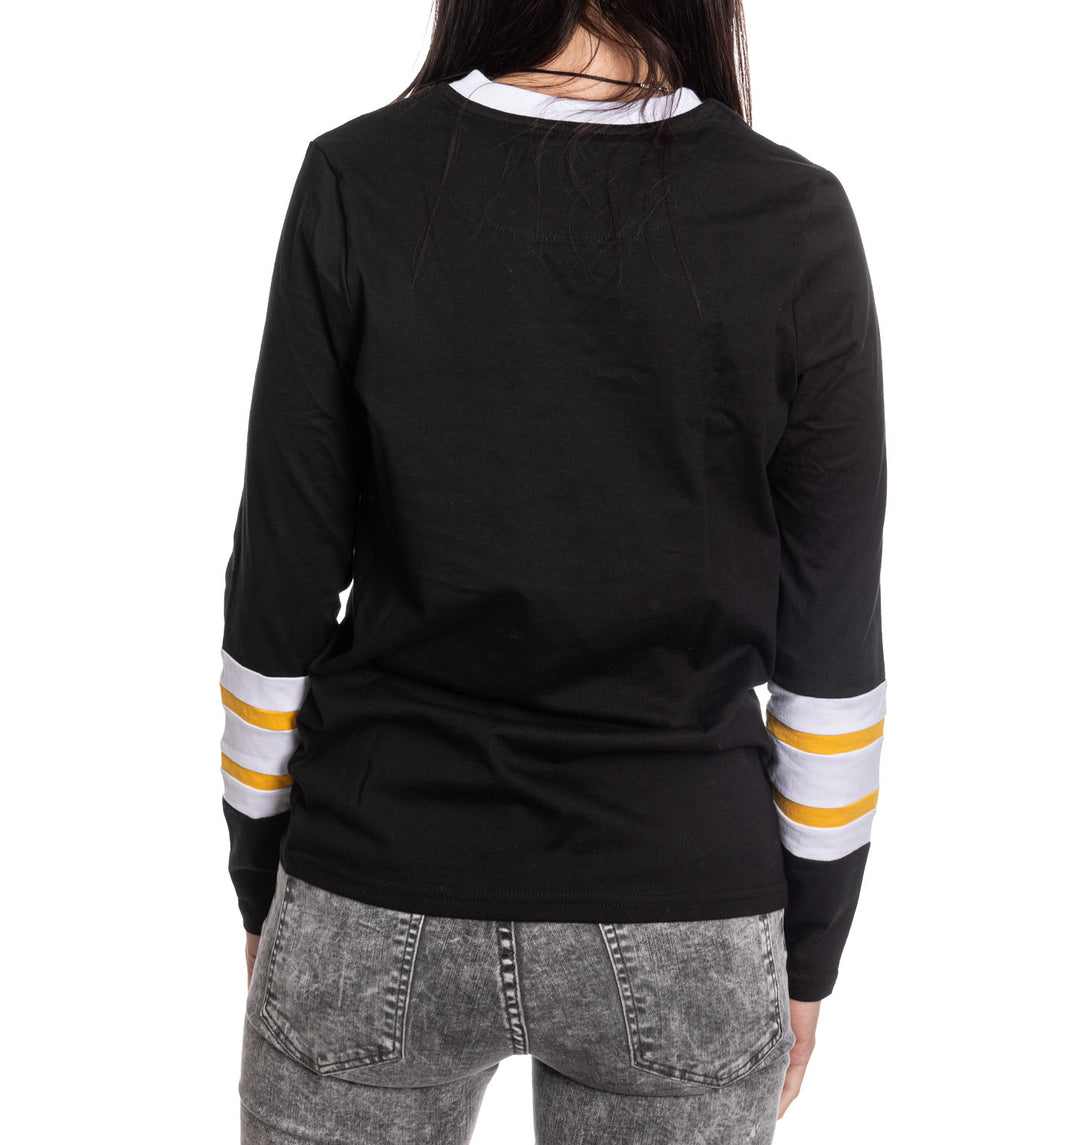 Pittsburgh Penguins Women's V-Neck Varsity Long Sleeve Shirt